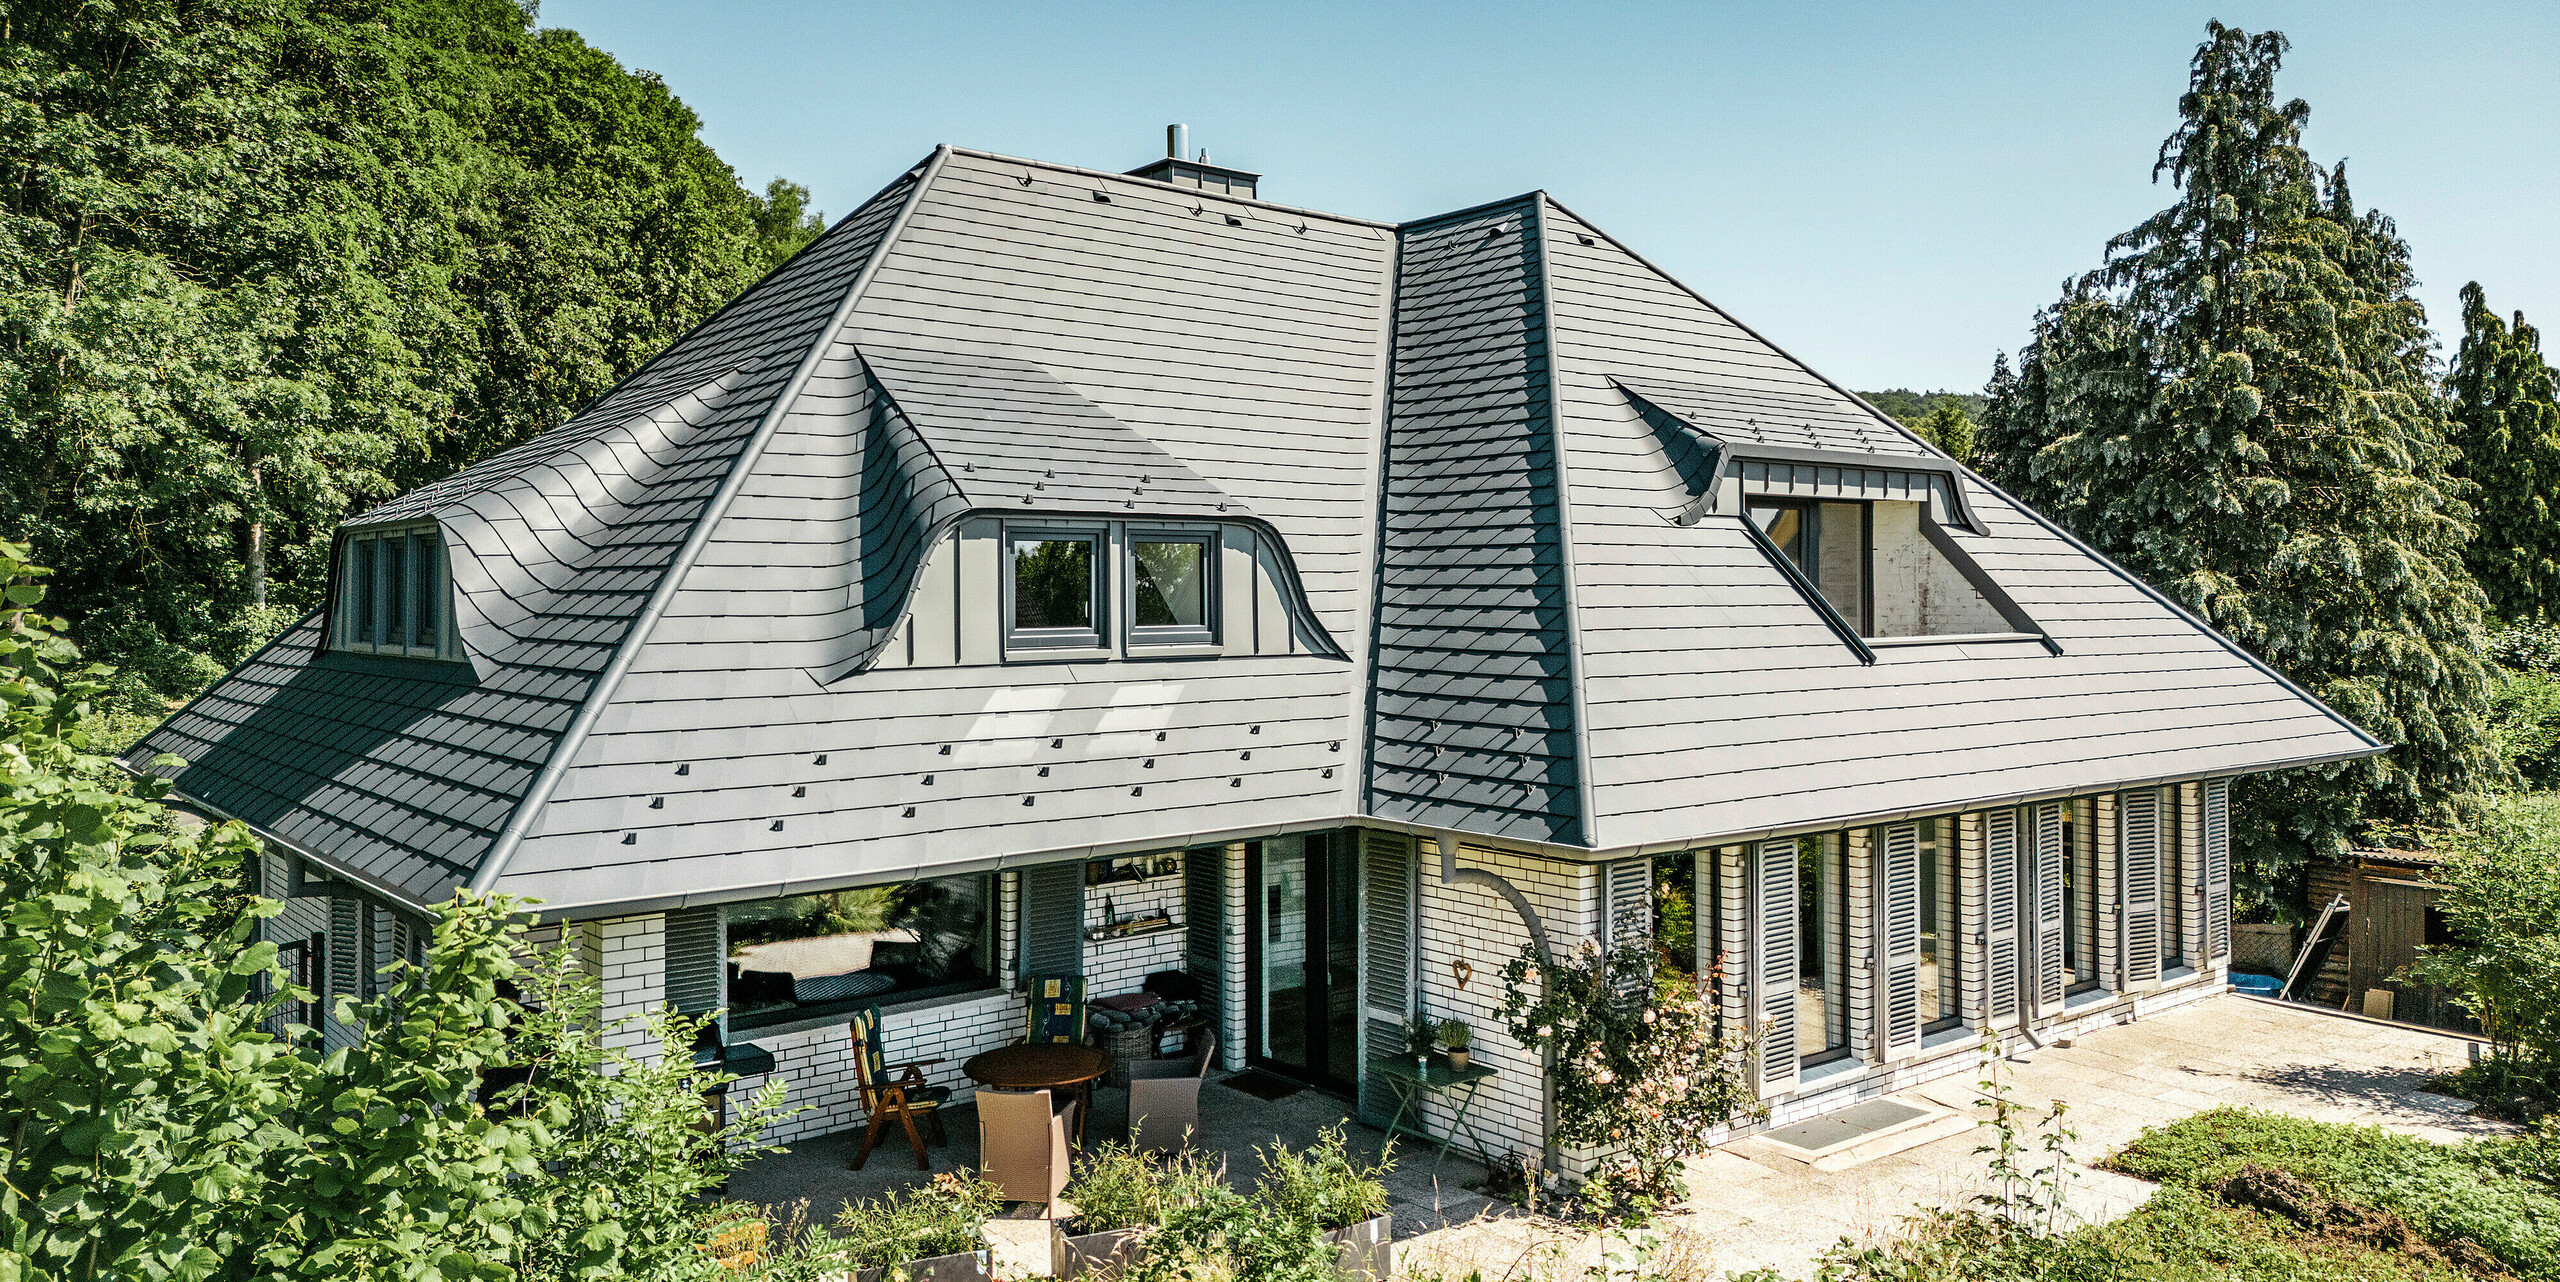 Einfamilienhaus mit spektakulärer Dachlandschaft eingedeckt mit PREFA Dachschindeln in P.10 Anthrazit